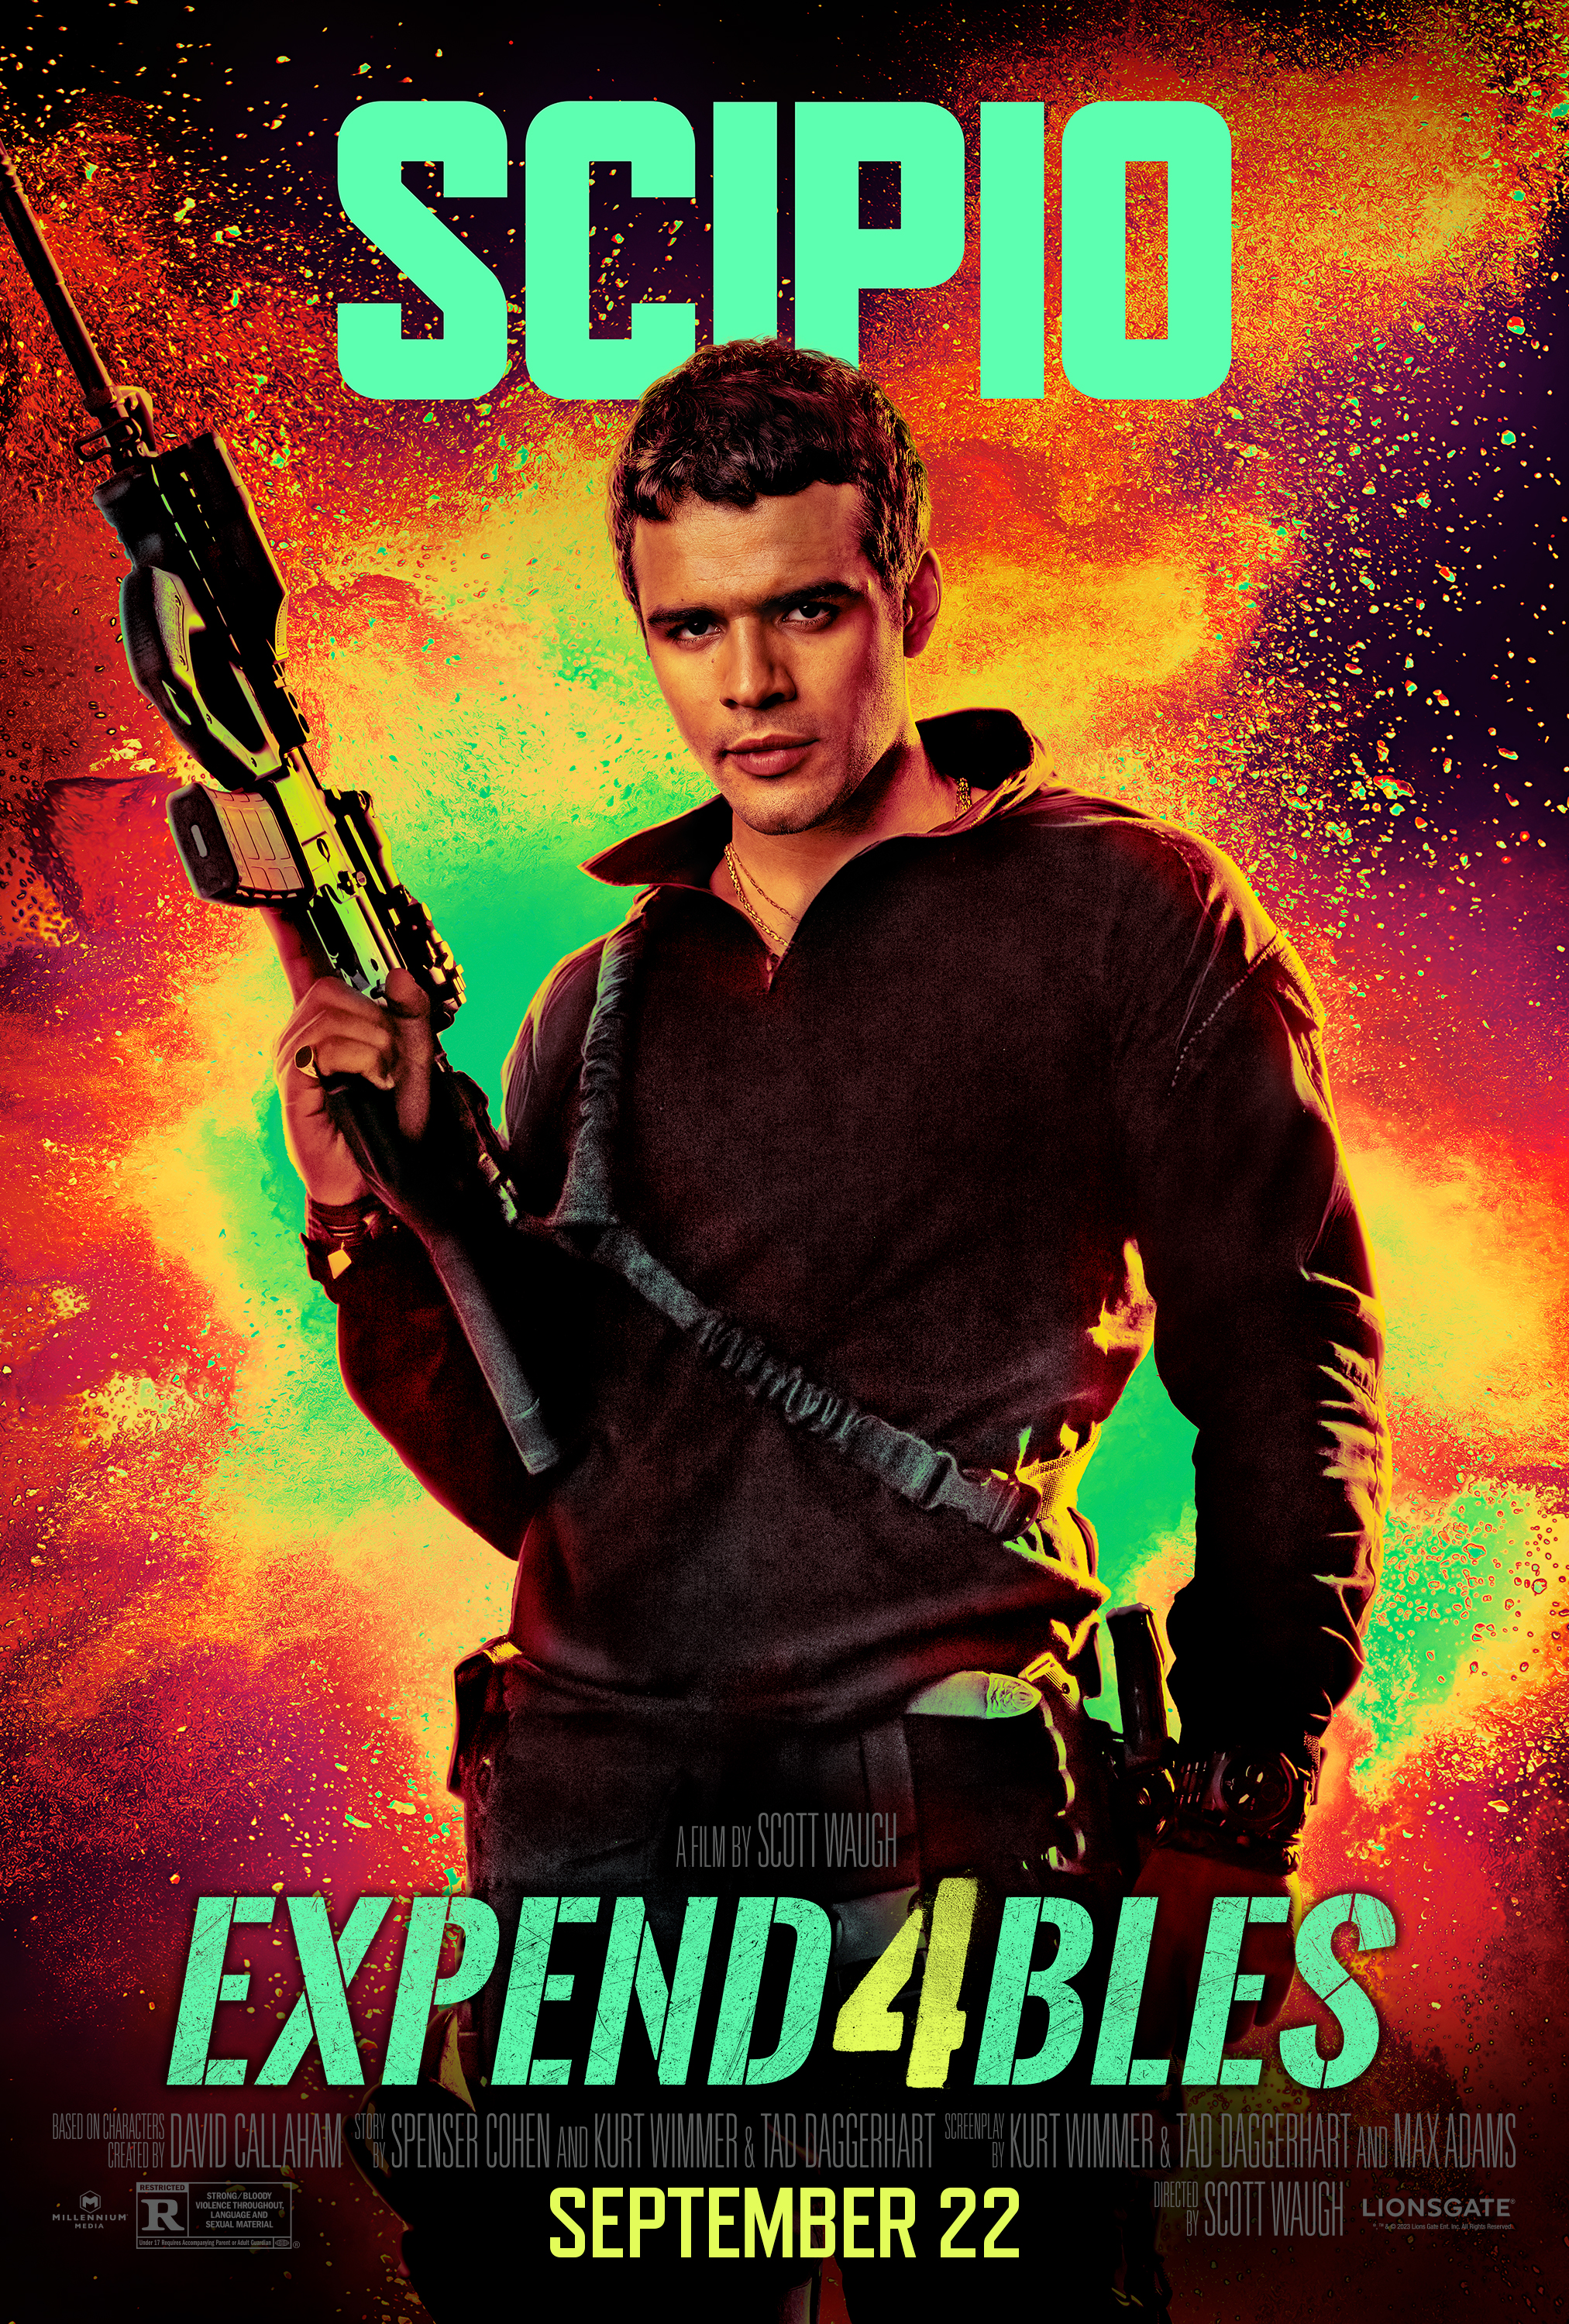 Jacob Scipio apunta su arma hacia arriba en el póster de Expend4bles.